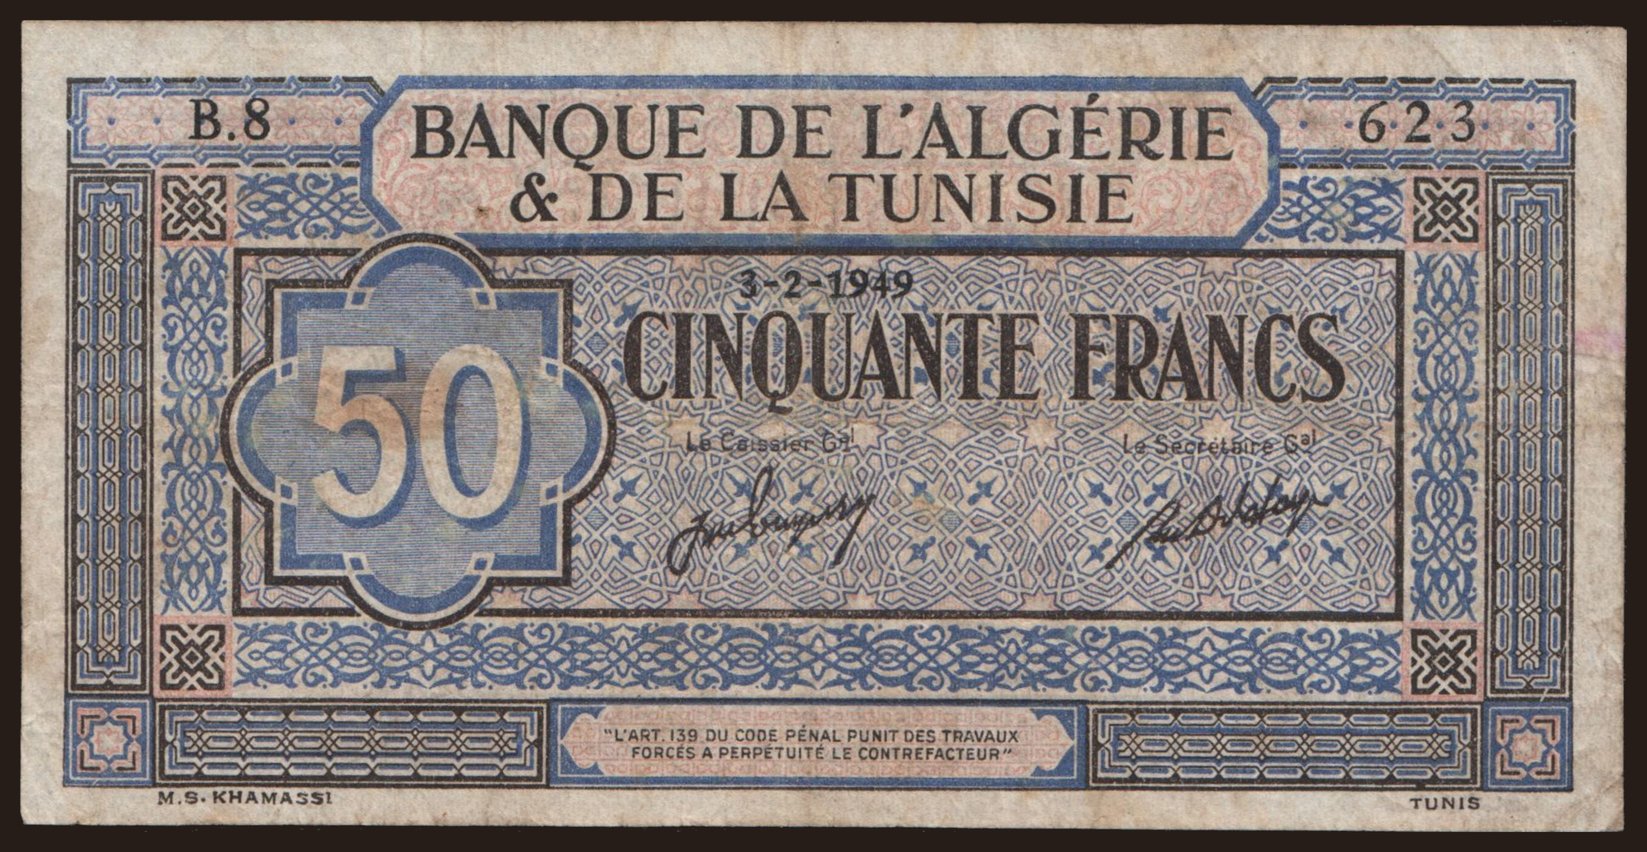 50 francs, 1949